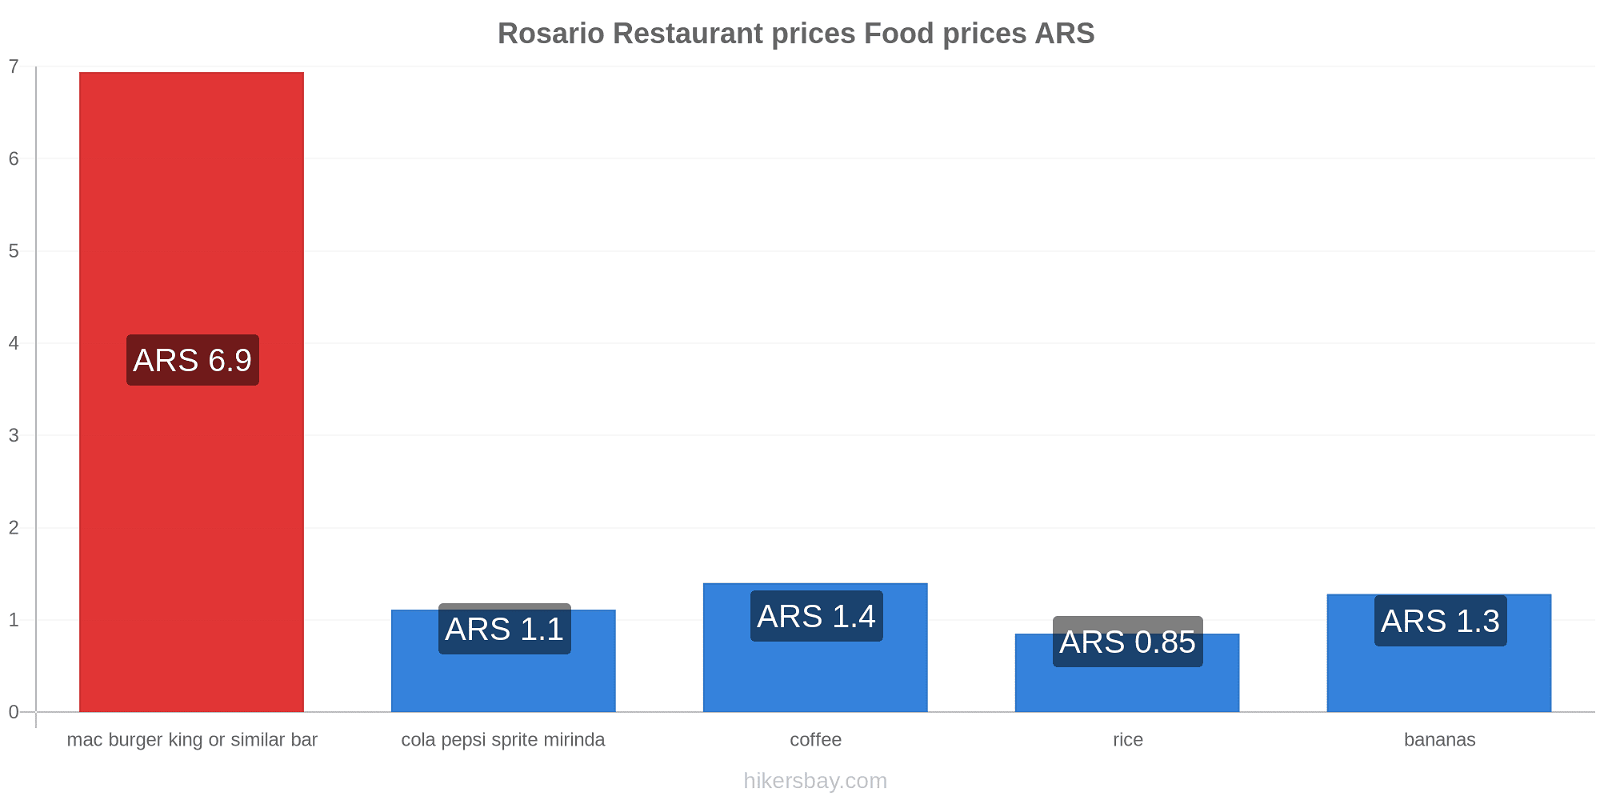 Rosario price changes hikersbay.com